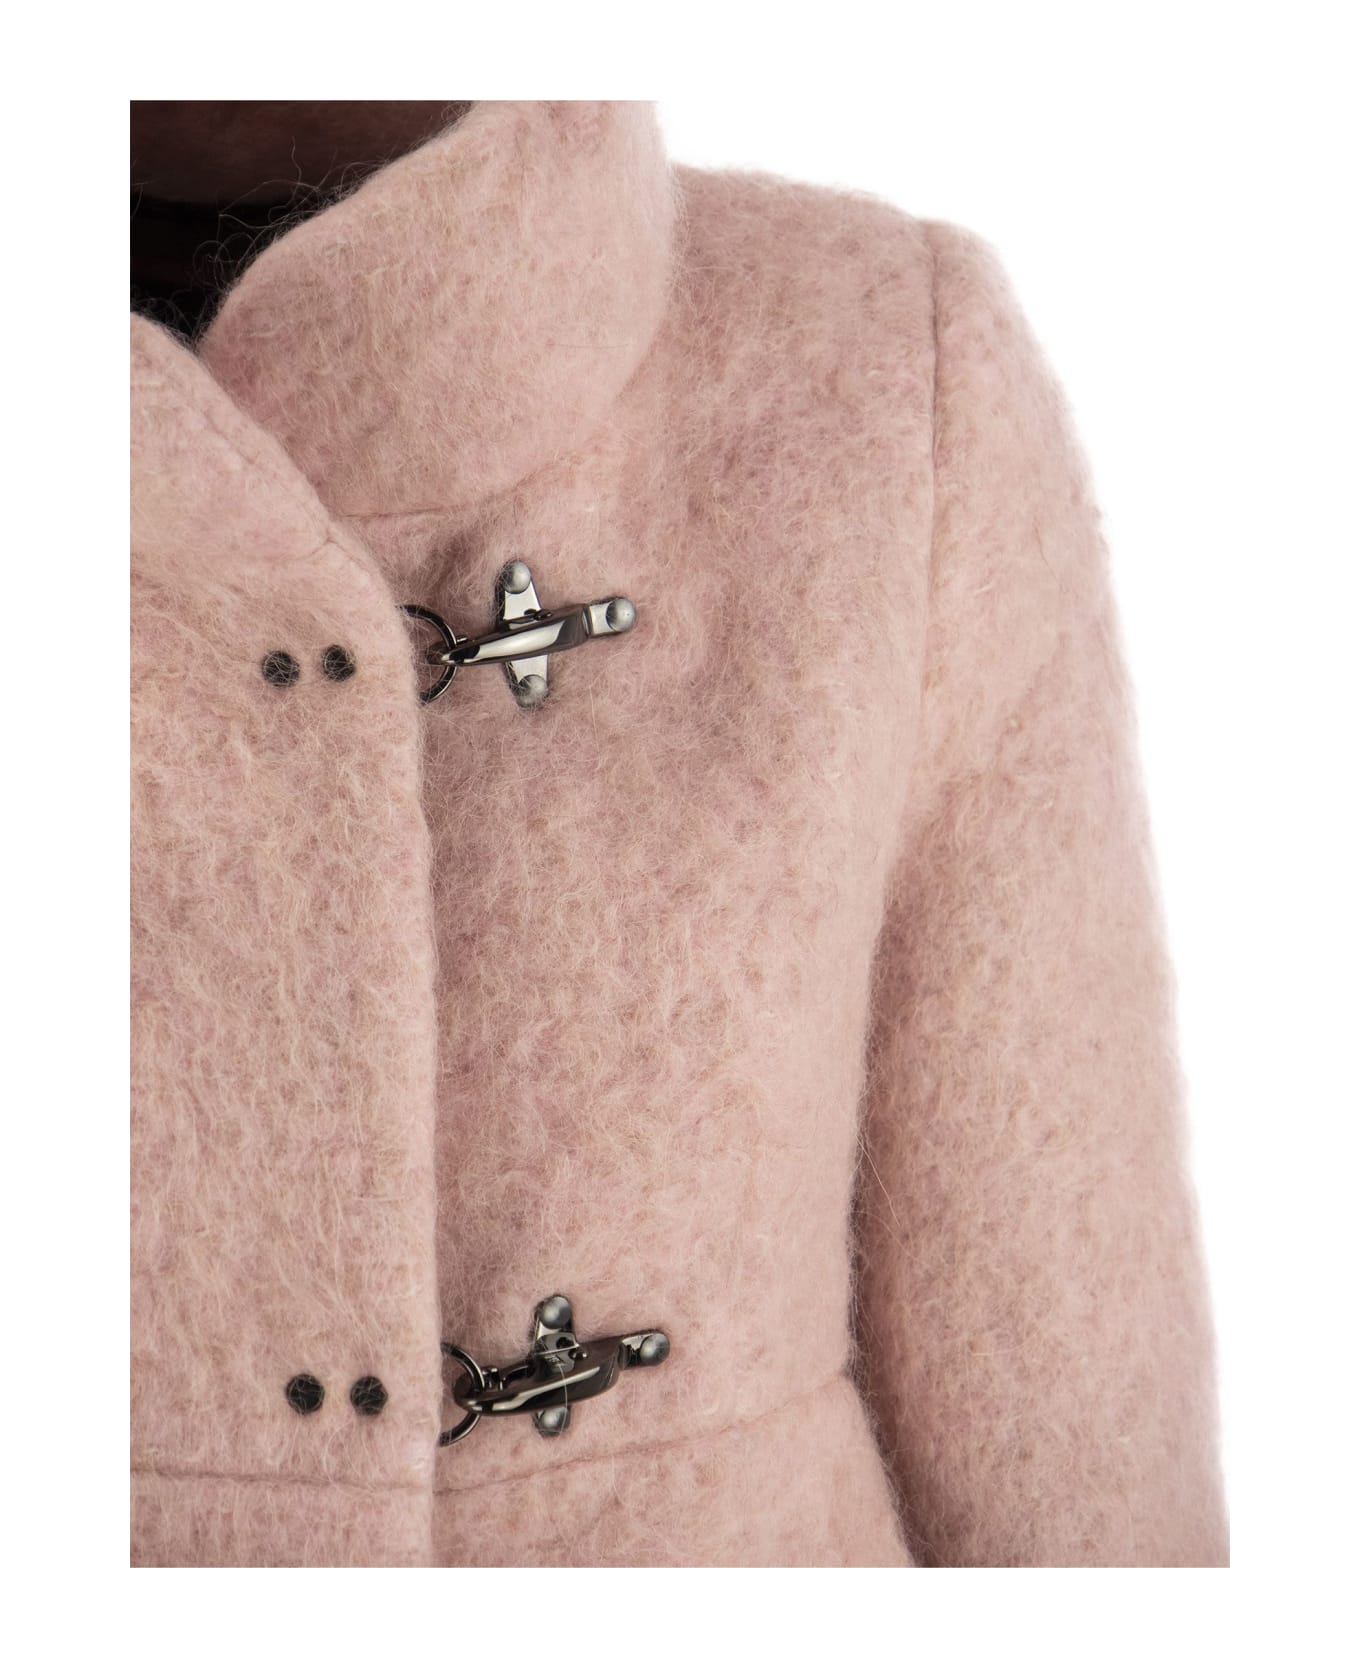 Fay Romantic Coat - Pink